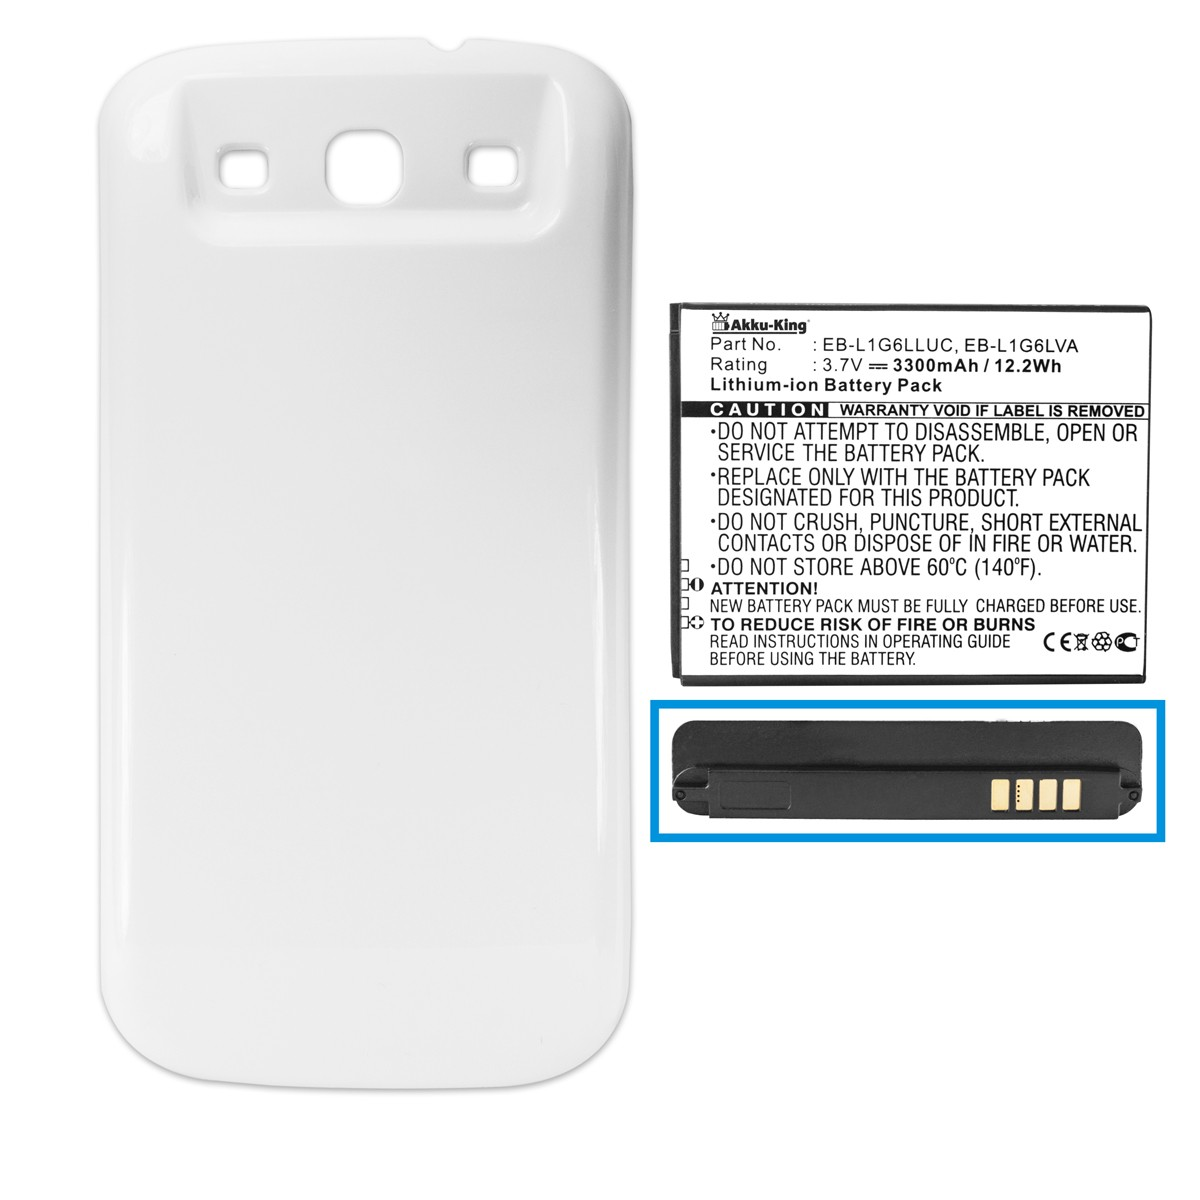 Samsung Li-Ion EB-K1G6UBUGSTD 3.7 Akku Akkudeckel 3300mAh kompatibel weiß Volt, mit Handy-Akku, mit AKKU-KING